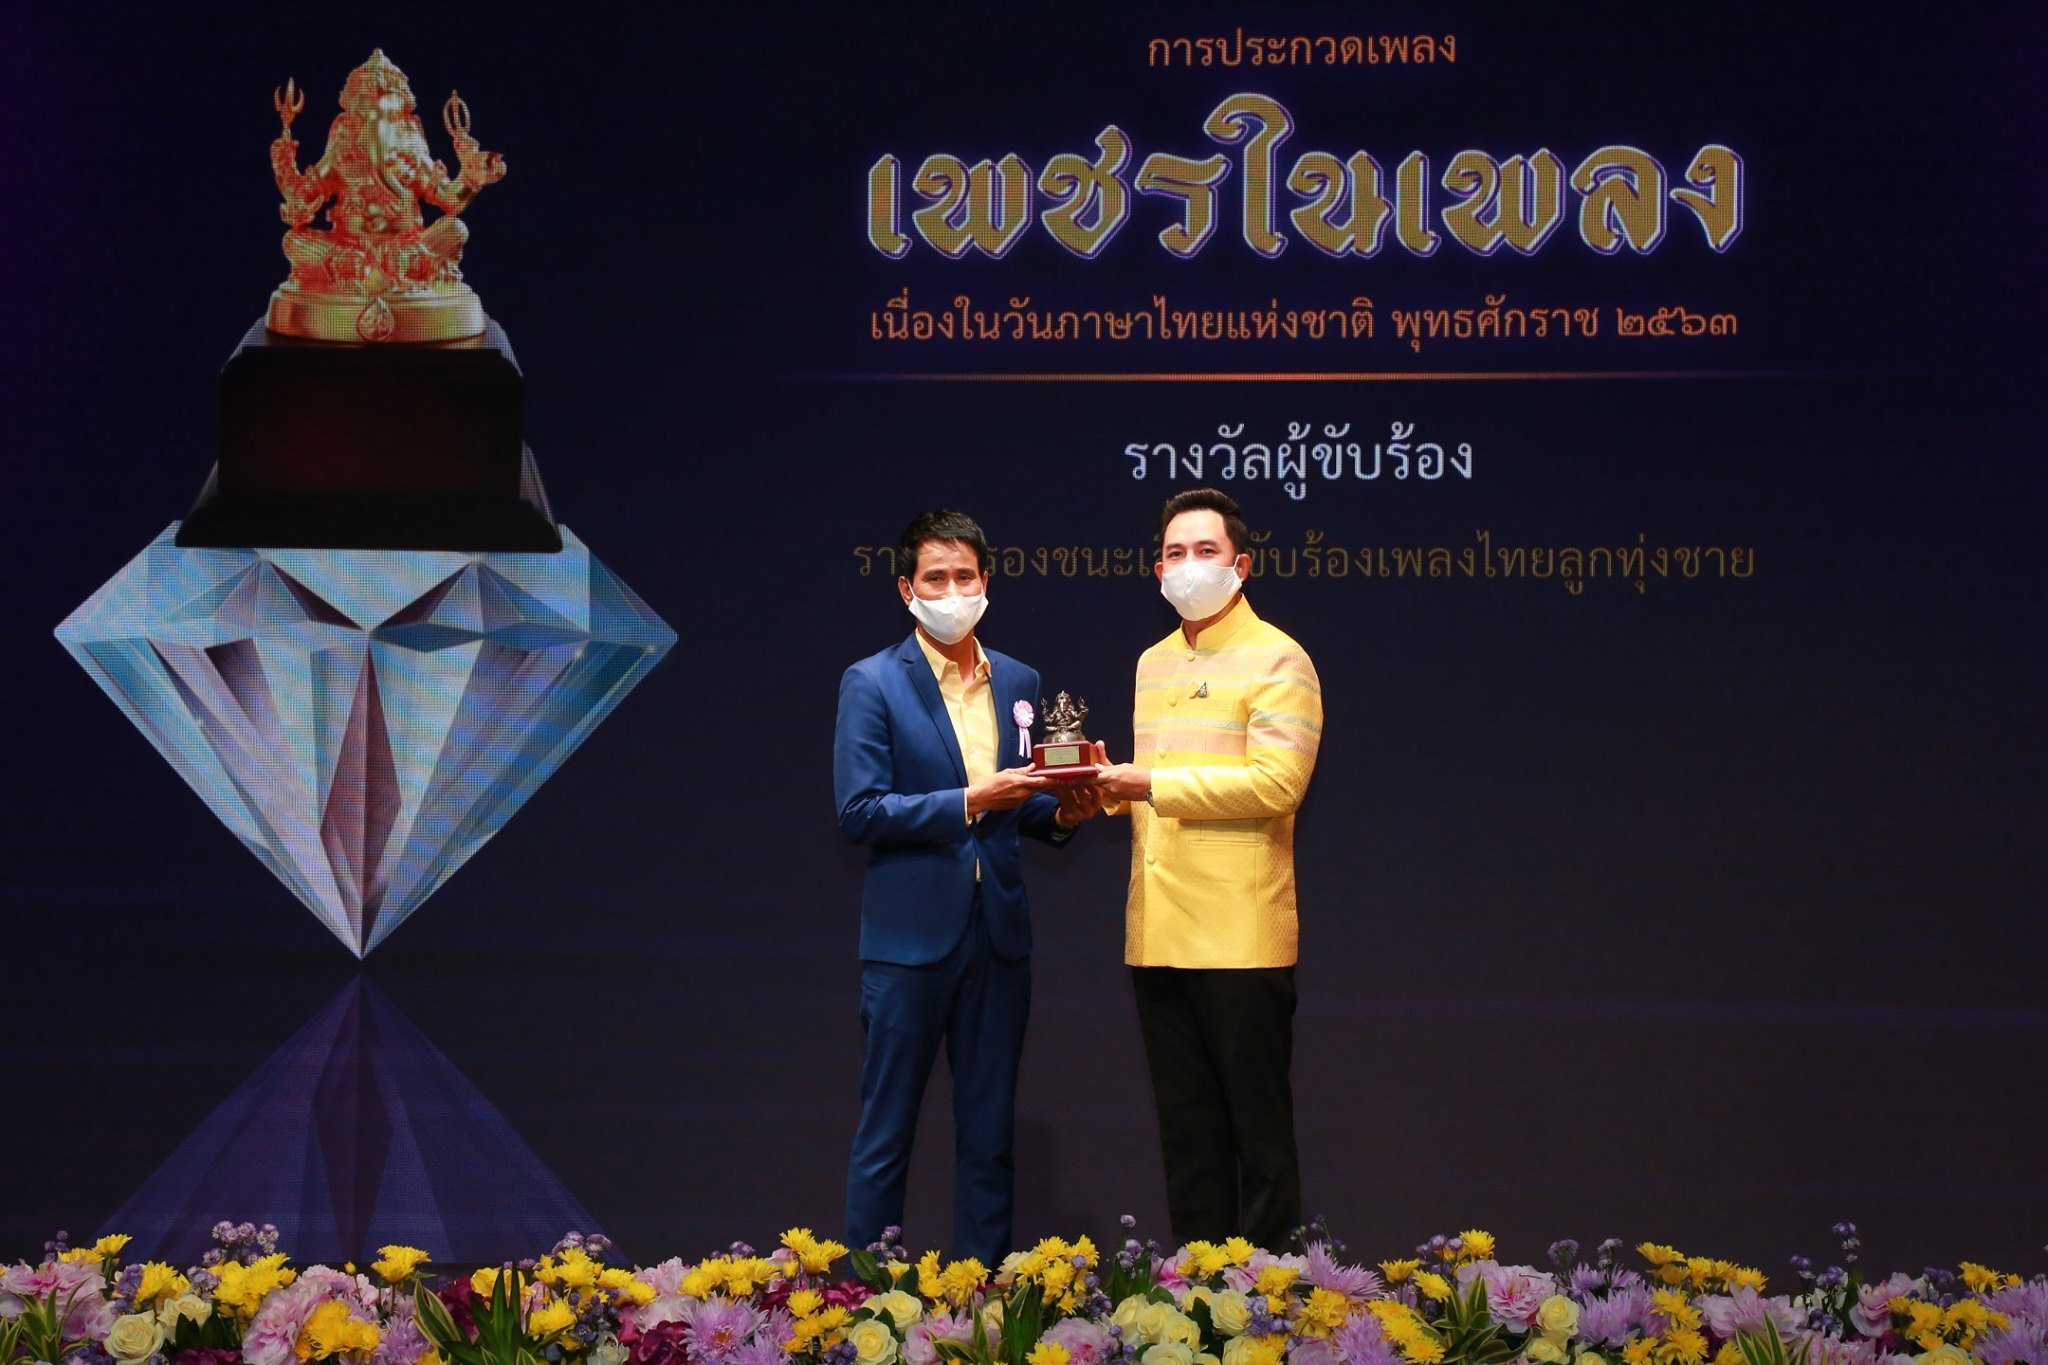 รางวัลเพชรในเพลง เนื่องในวันภาษาไทยแห่งชาติ ประจำปี 2563 รางวัลการขับร้องเพลงดีเด่นด้านภาษาไทย รางวัลรองชนะเลิศ